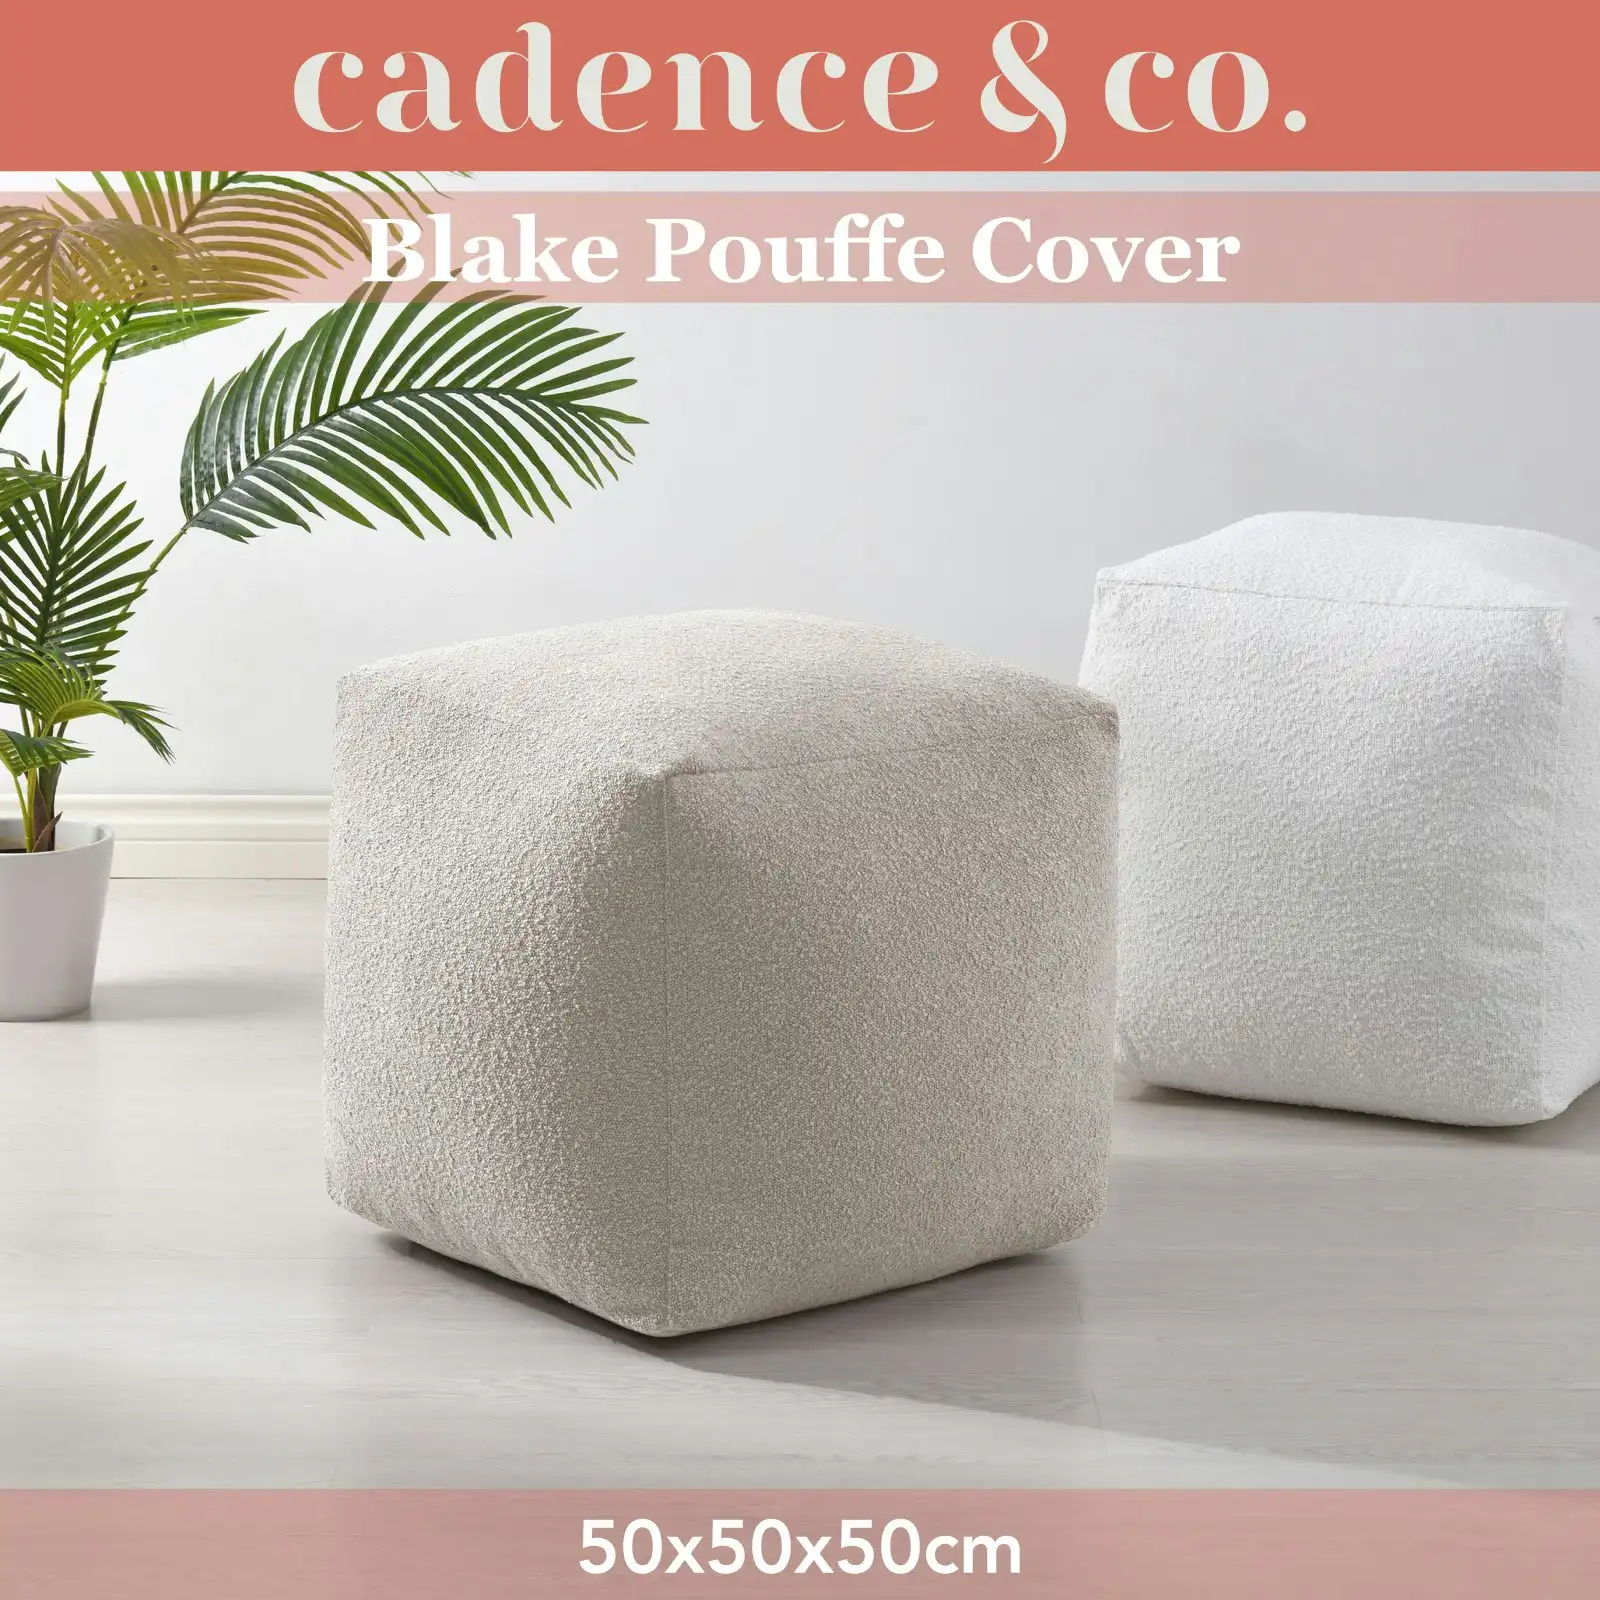 Cadence & Co. Blake Boucle Pouffe Cover Parchment 50x50x50cm